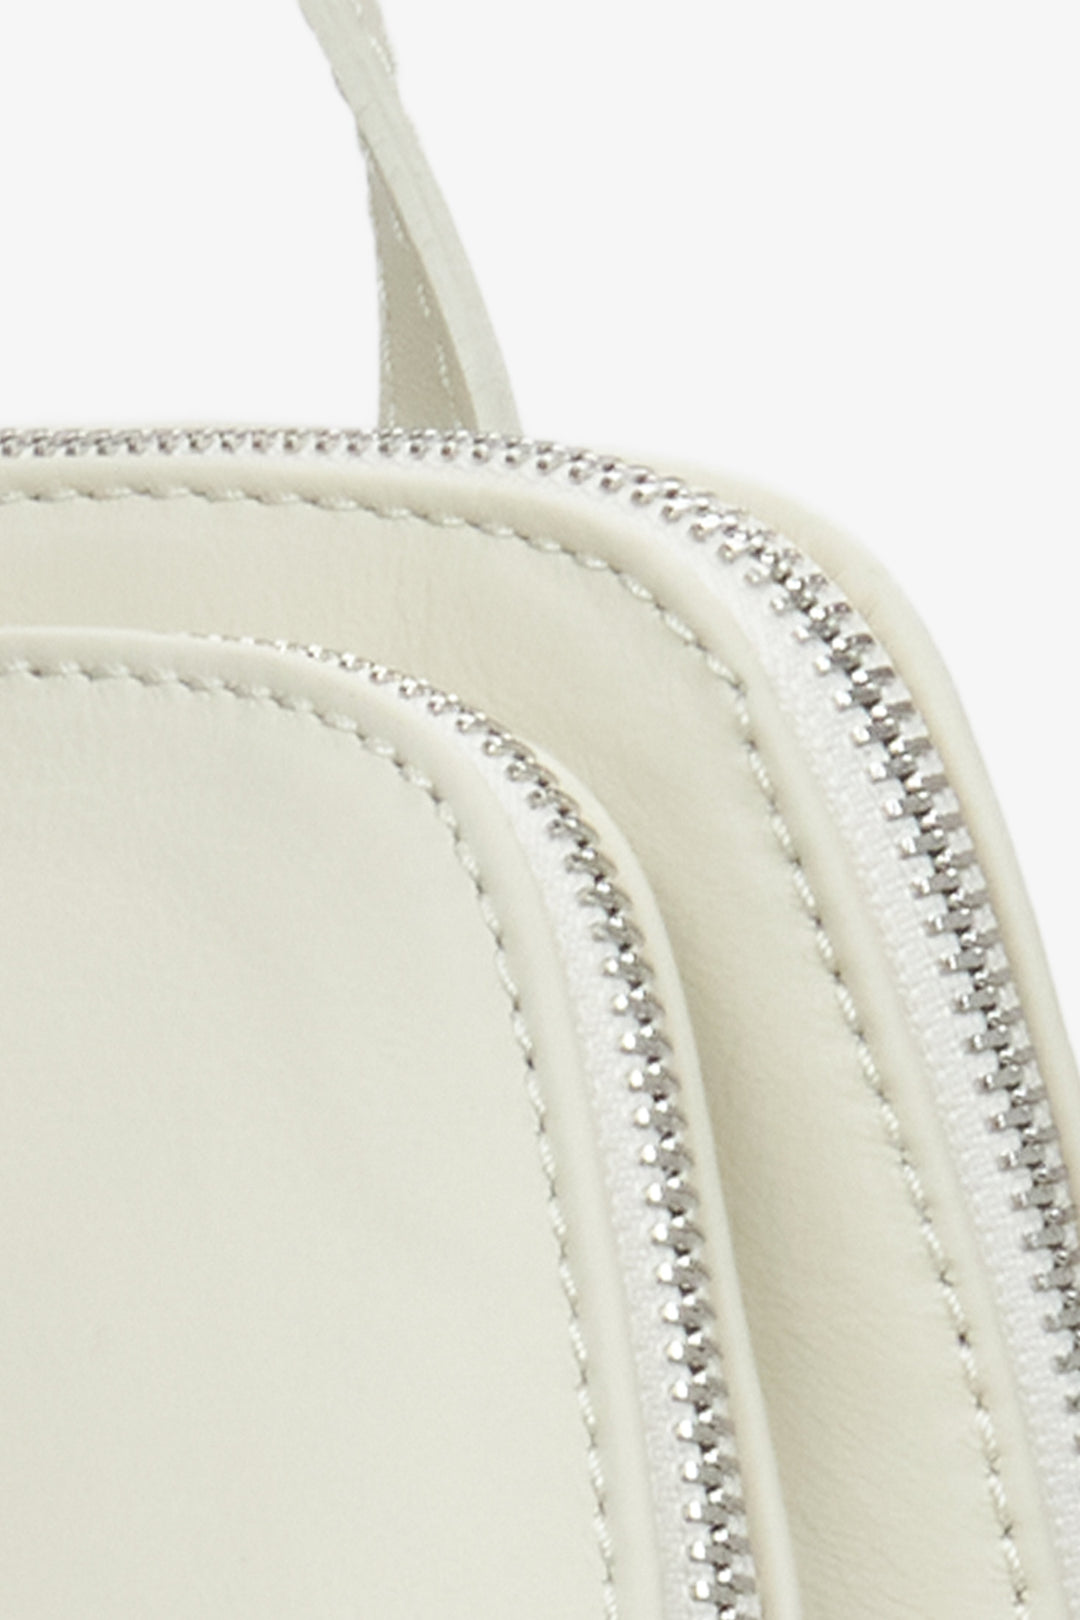 Mleczno-beżowy plecak damski z włoskiej skóry naturalnej Estro - zbliżenie na detal.